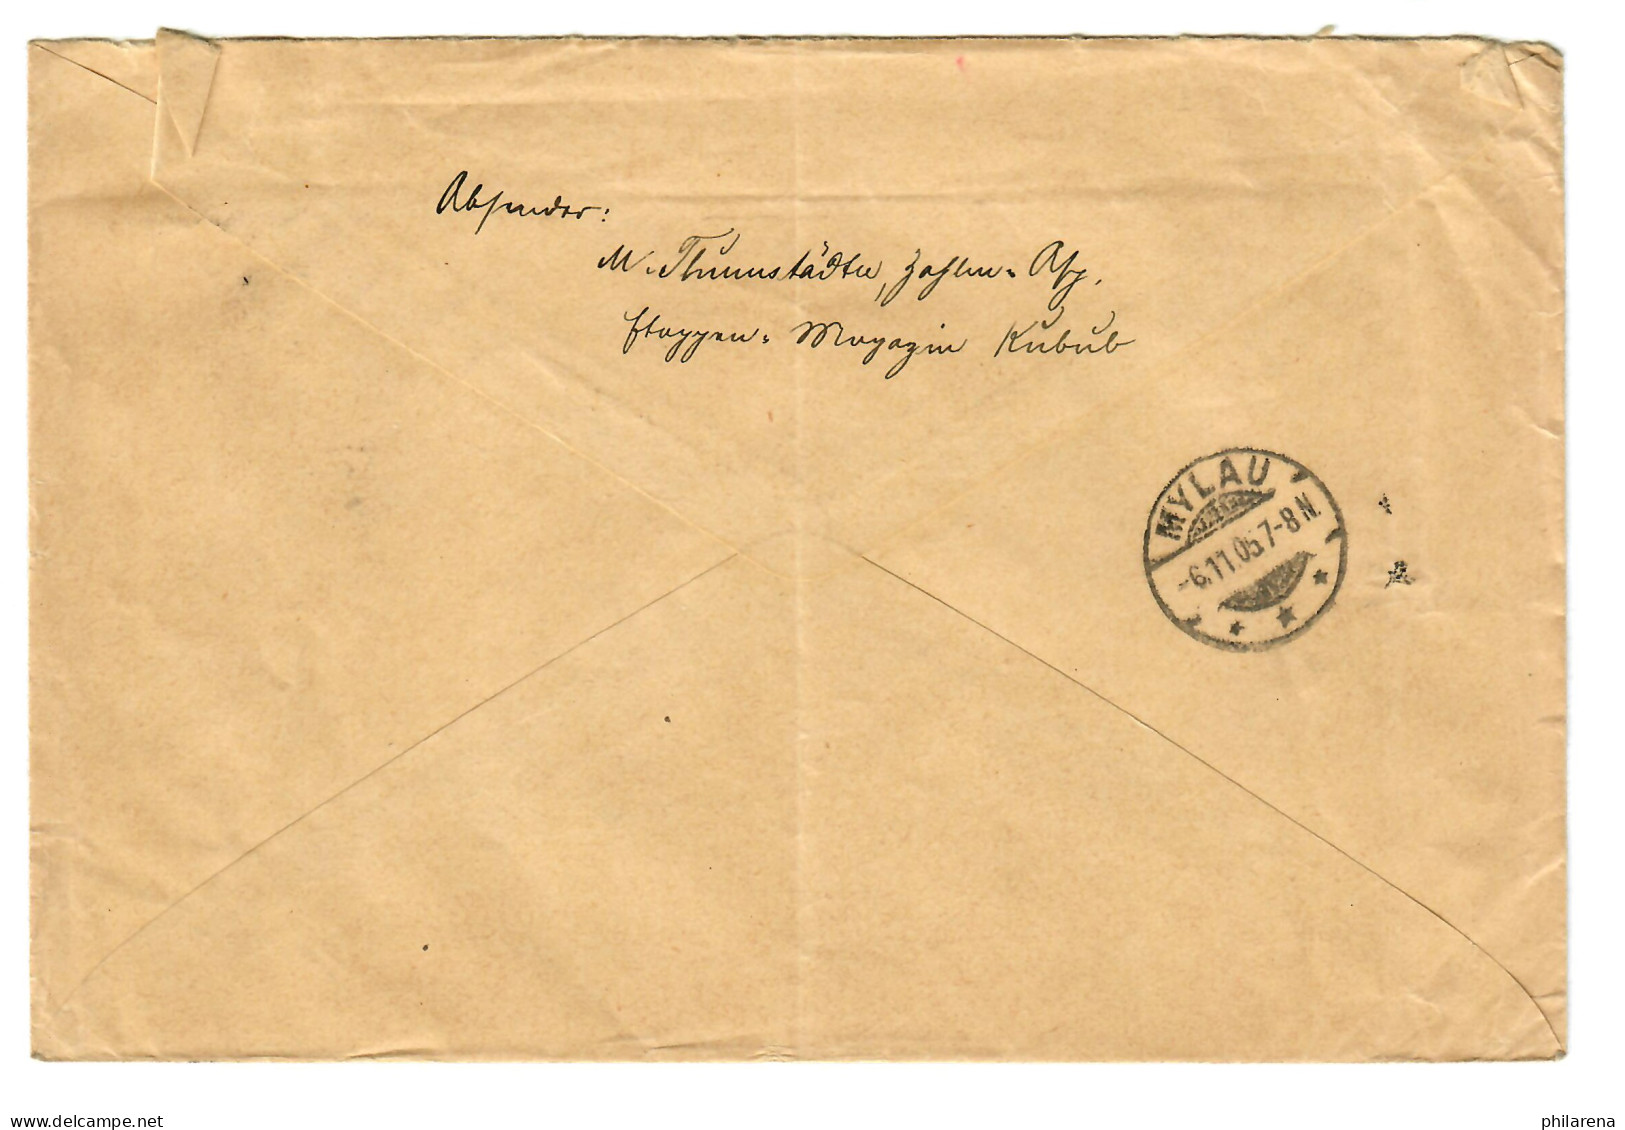 Feldpost Brief Kaiserliche Schutztruppe Für Südwestafrika, Etappe Kubub 1905 - Sud-Ouest Africain Allemand